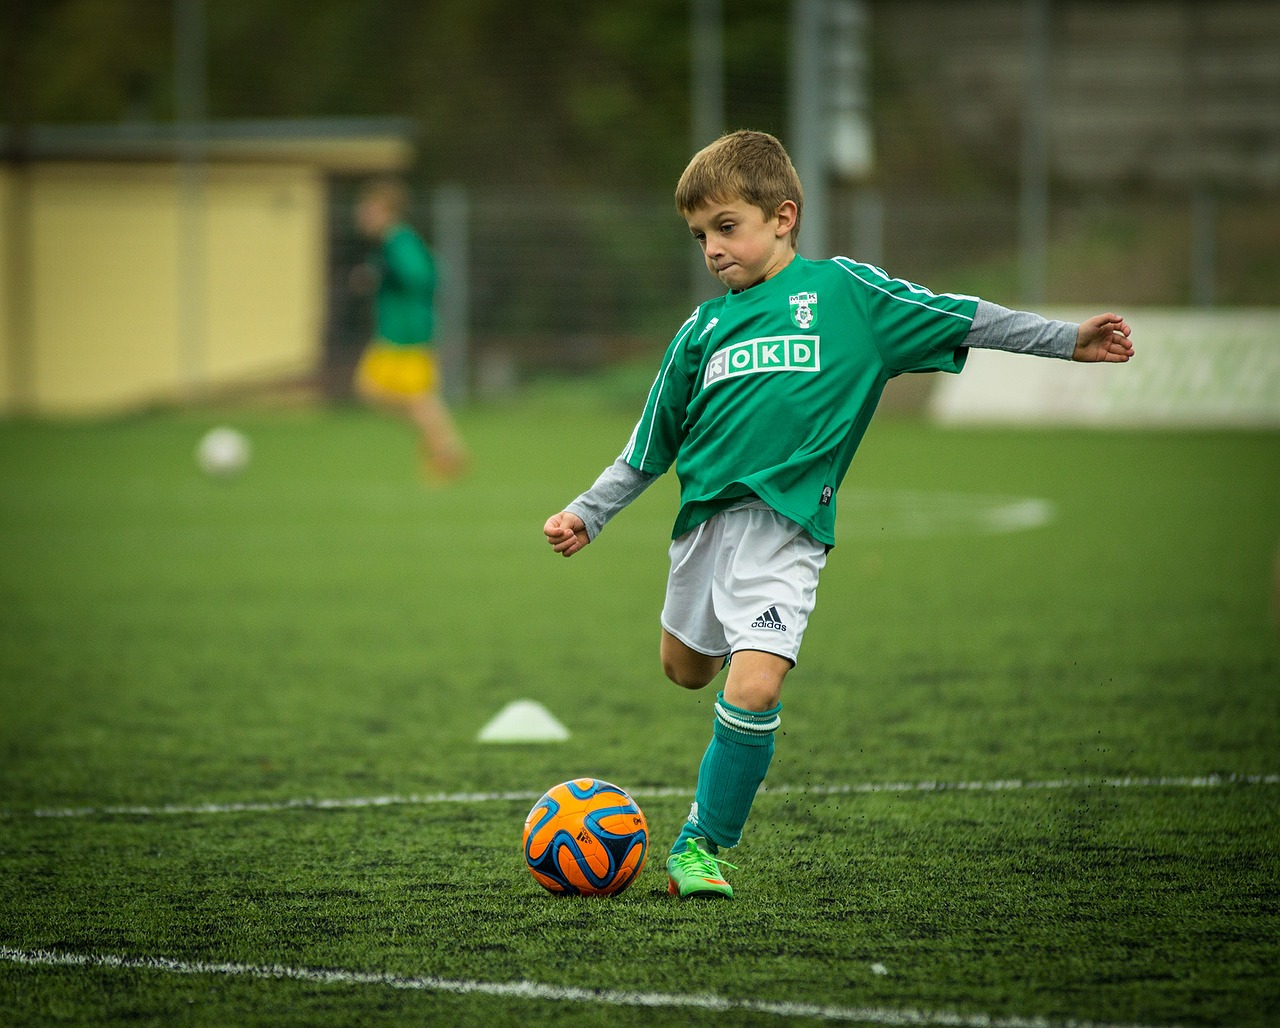 Fußball-Kind